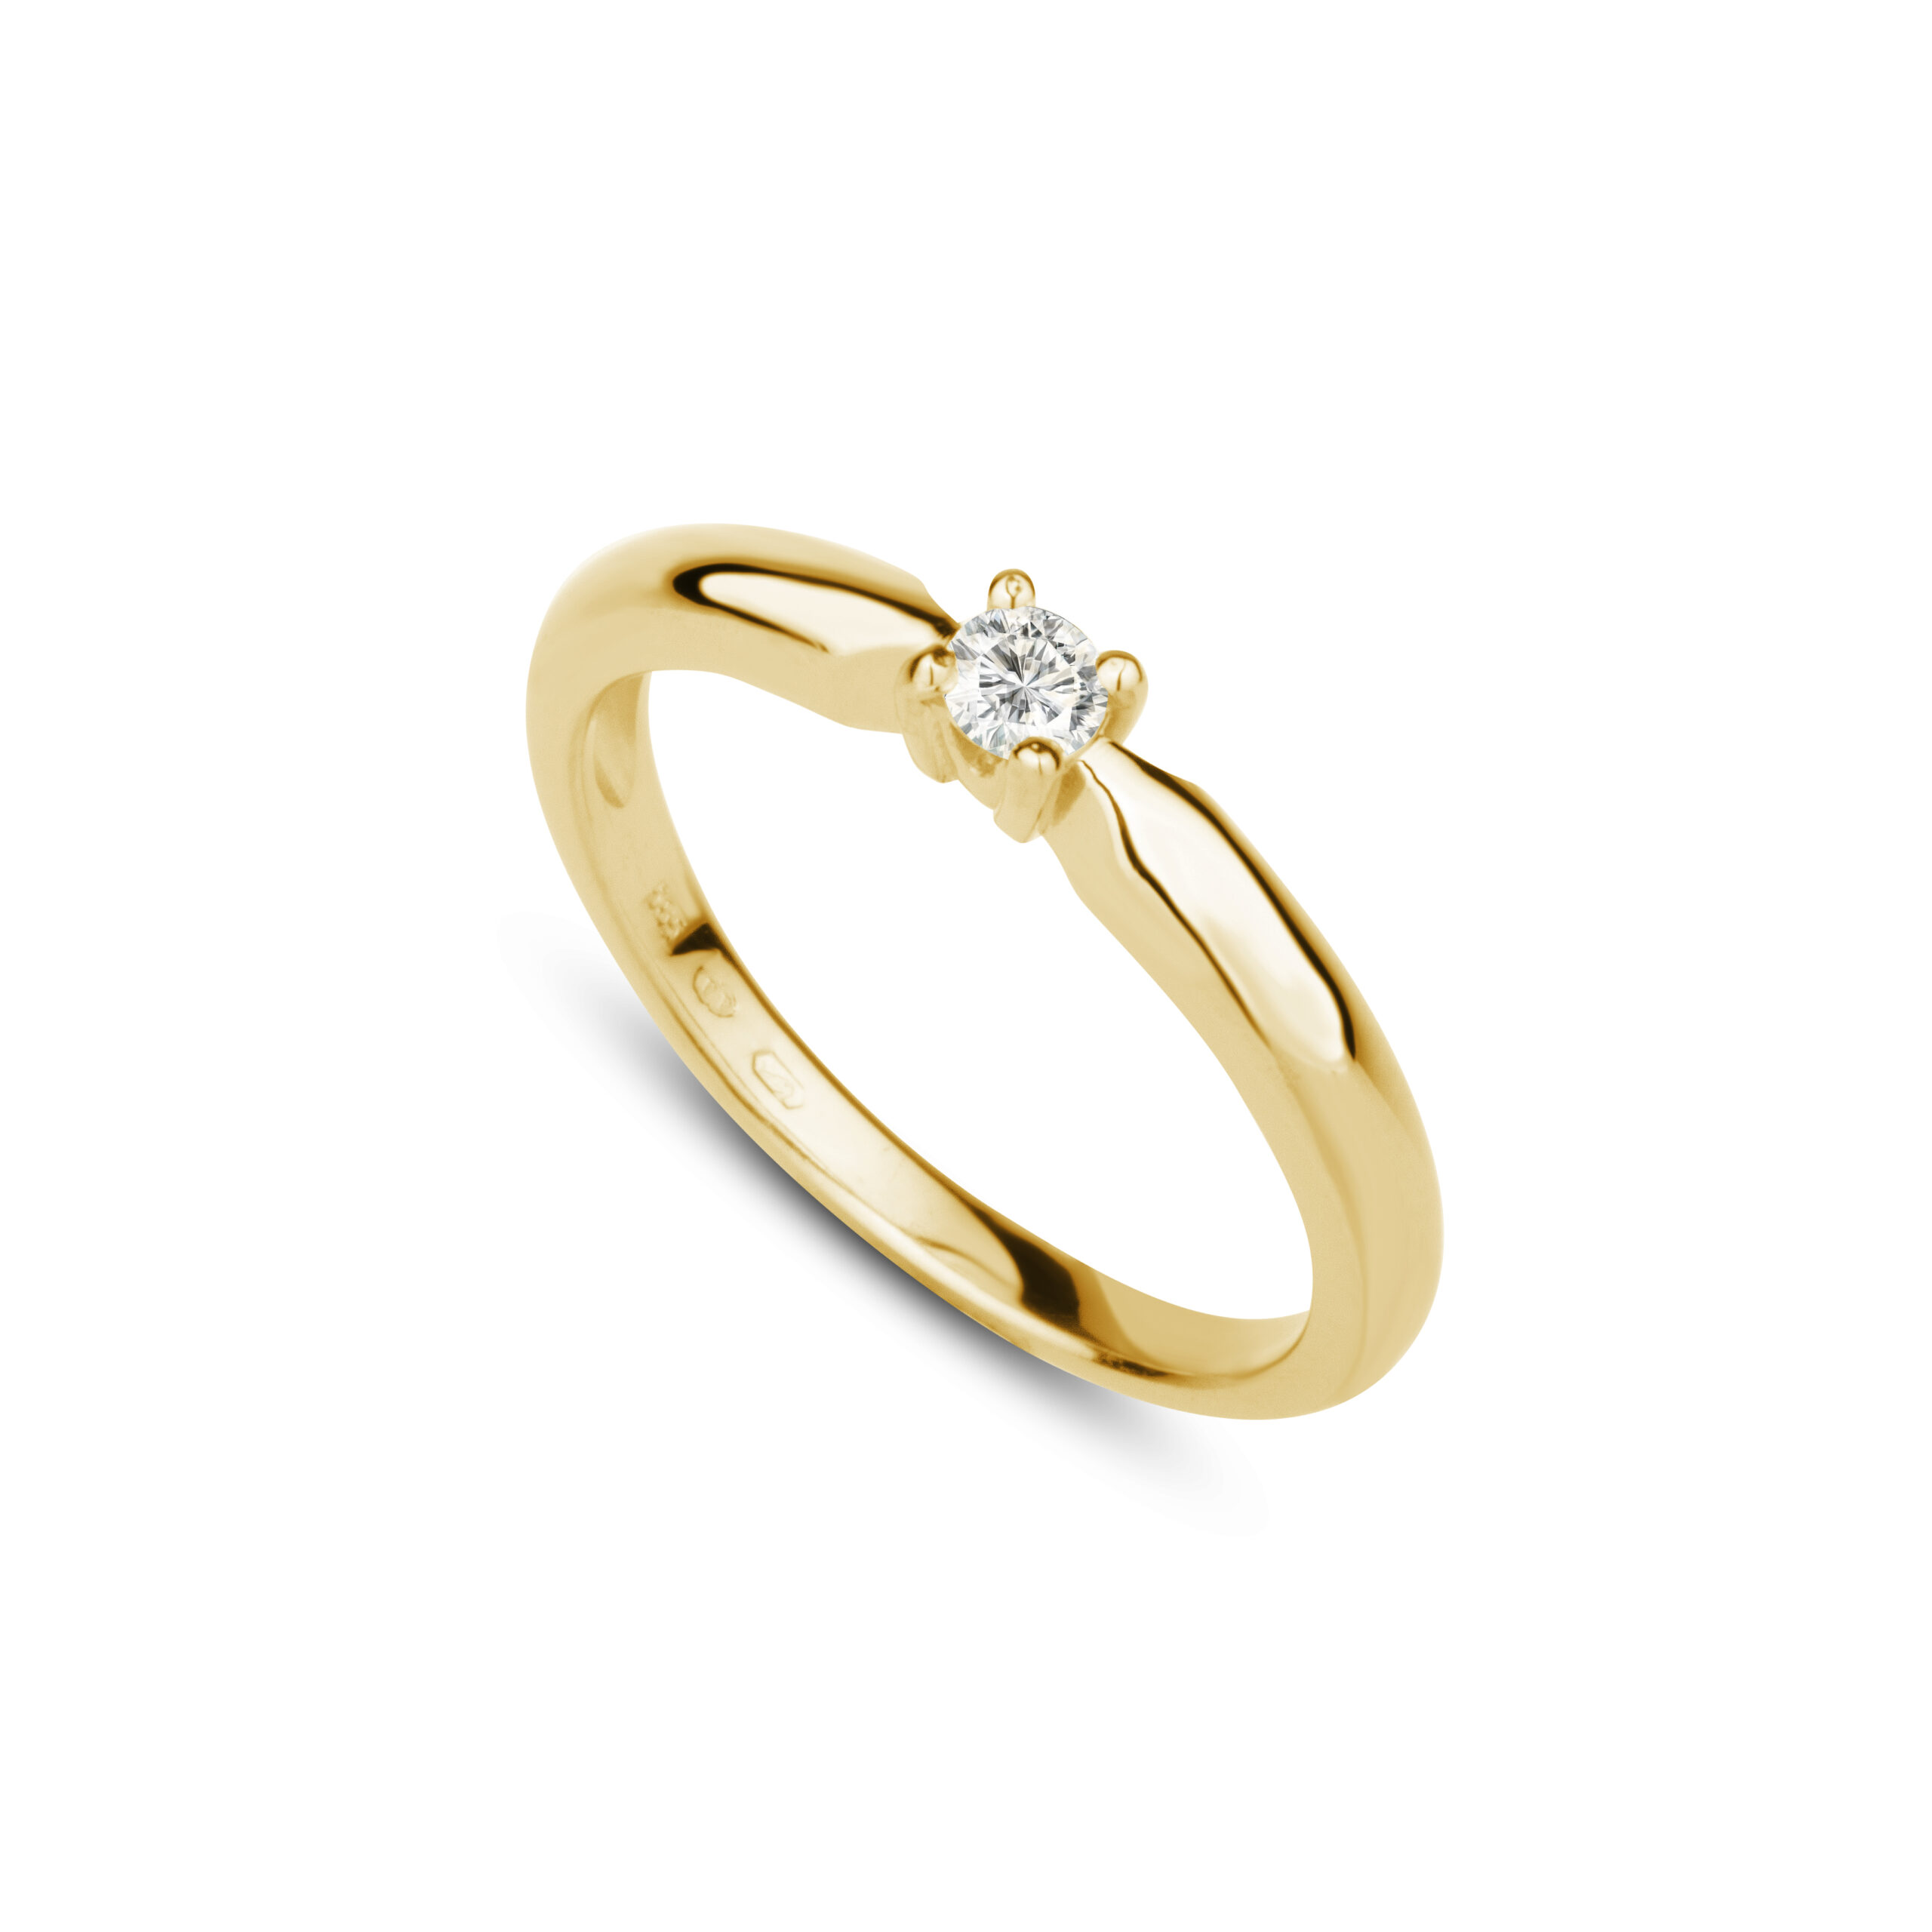 Zásnubní prsten značky FOX® 20 ze žlutého zlata, který je osazený jedním centrálním diamantem briliantového brusu. poloprofil